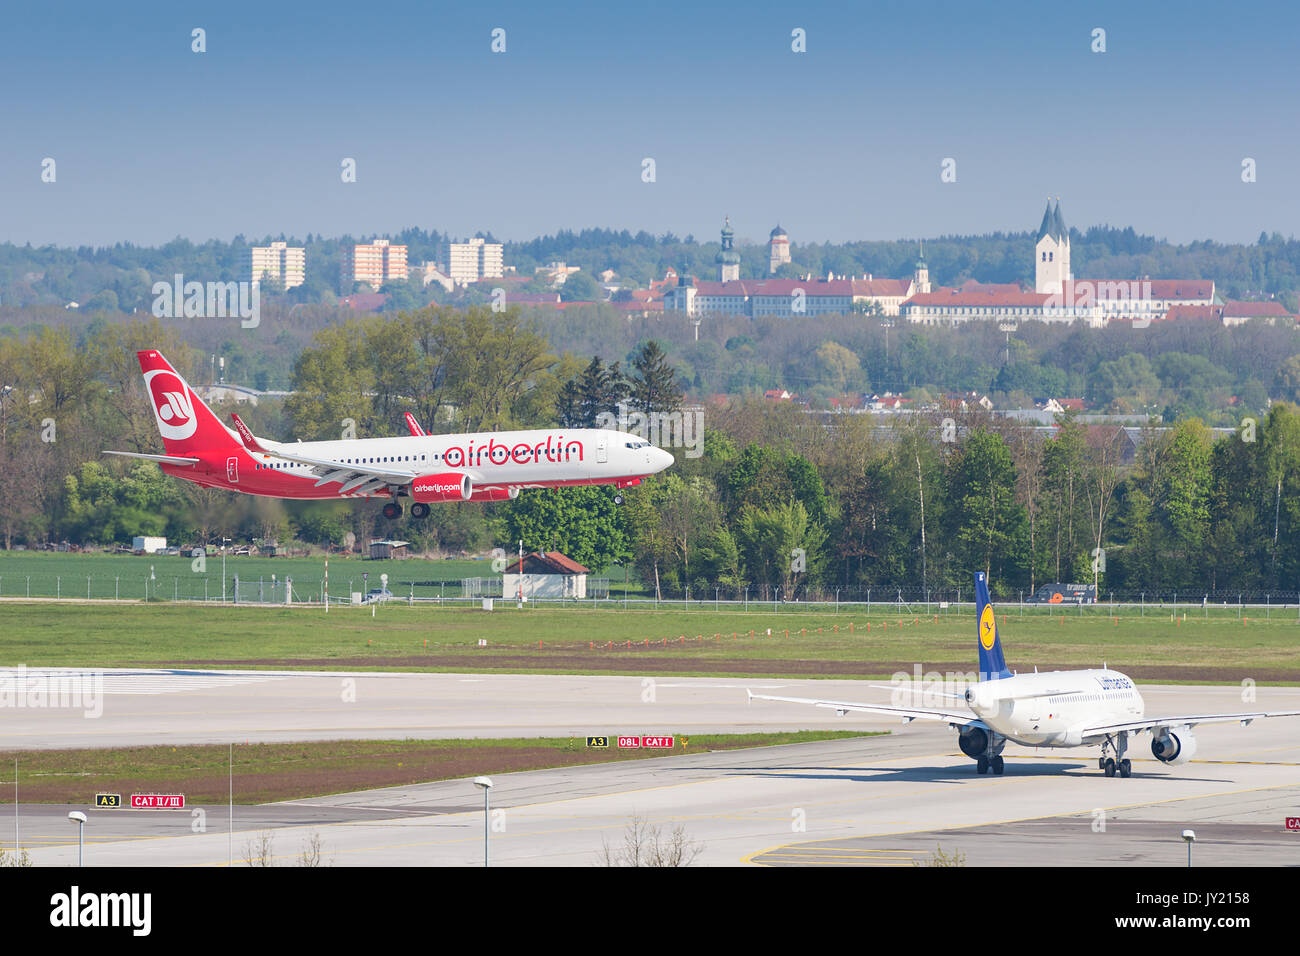 Munich, Allemagne - le 6 mai 2016 : avion Boeing 737 de la compagnie aérienne Air Berlin l'atterrissage à l'aéroport international de Munich. Banque D'Images